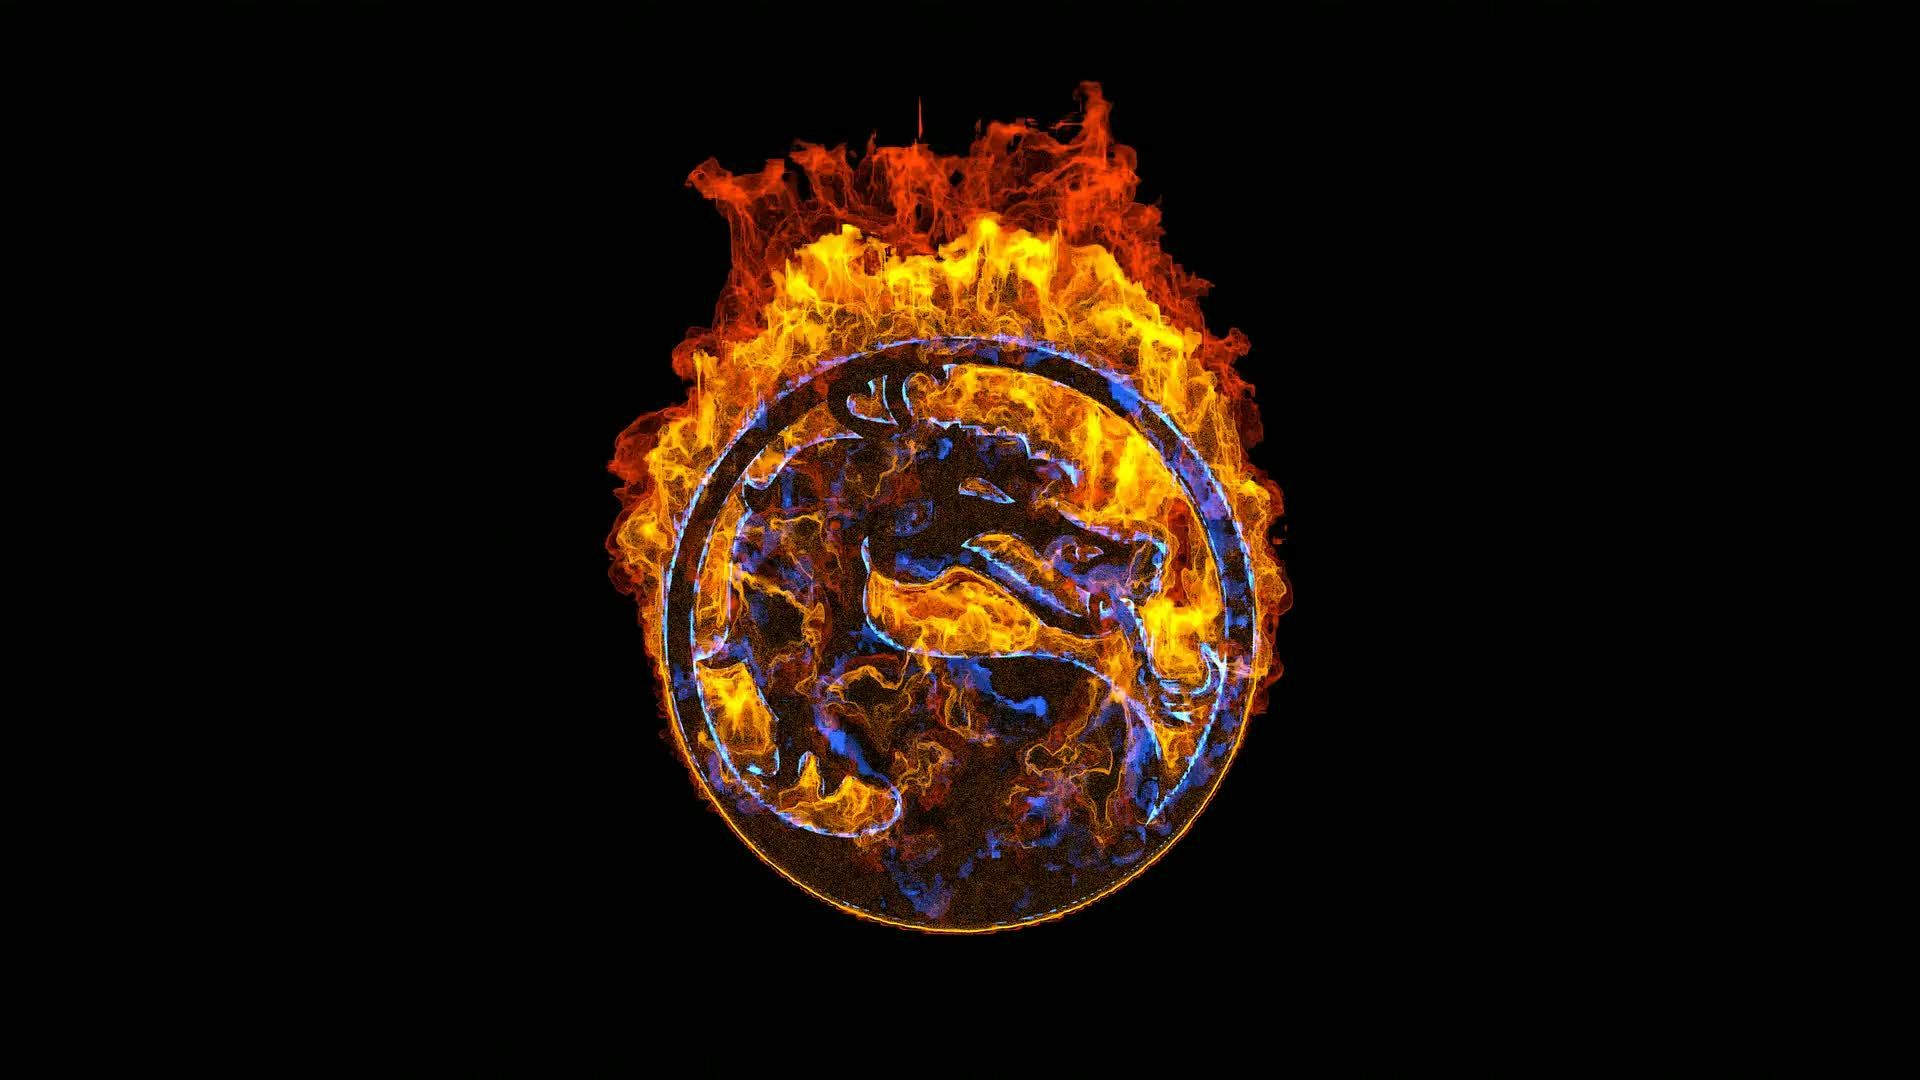 Mortal Combat Fire Logo Live Wallpaper Free